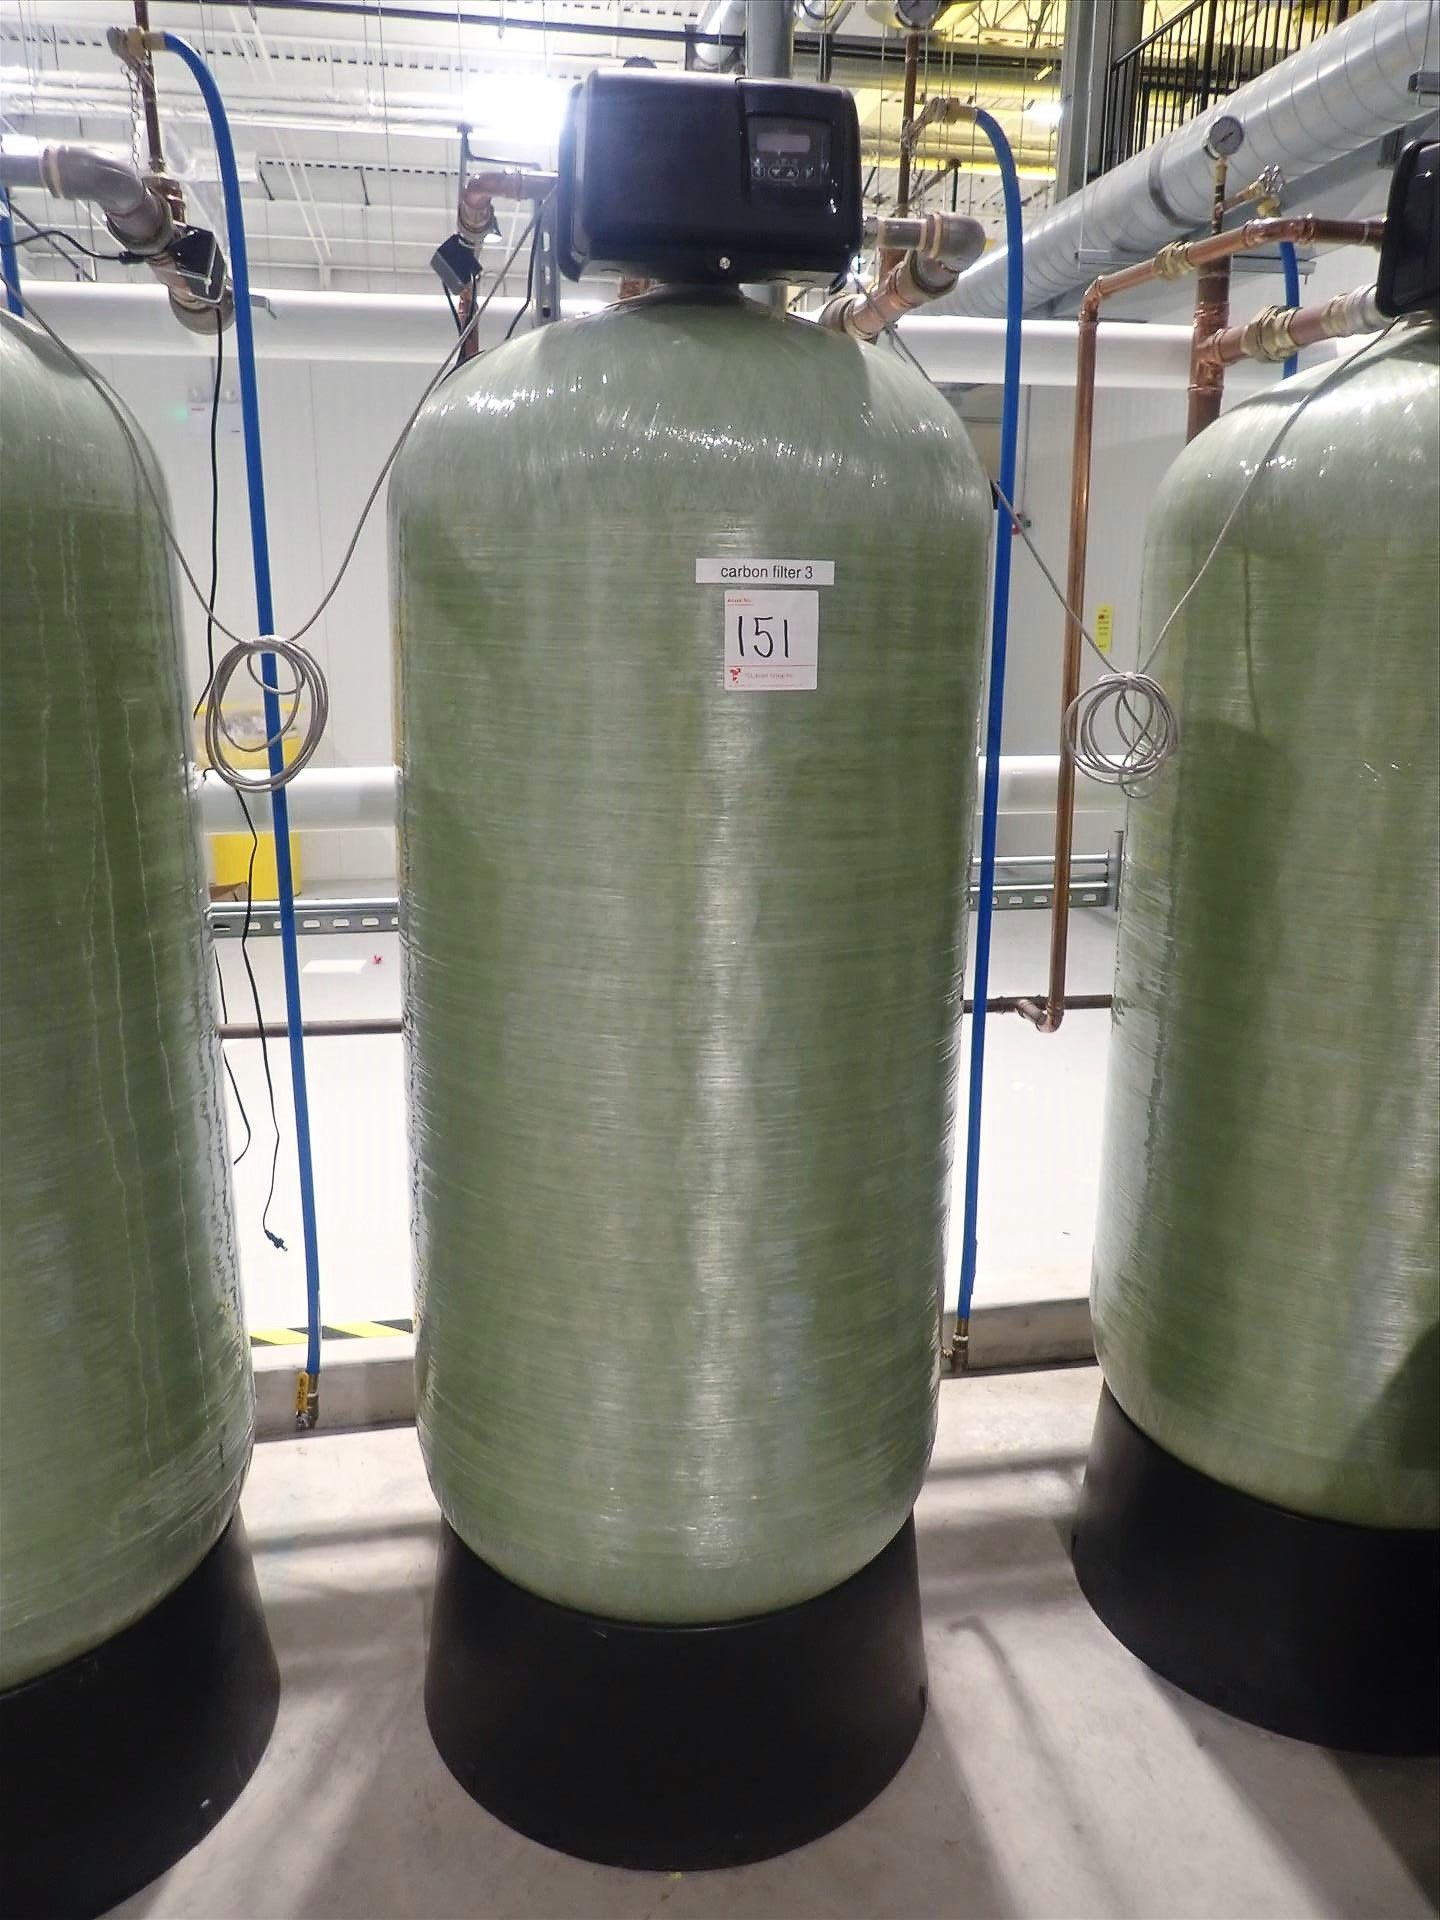 PentairWater fiberglass carbon filter tank, mod. CH33868, 30 in. dia. x 72 in., 187 gal., 150 PSI w/